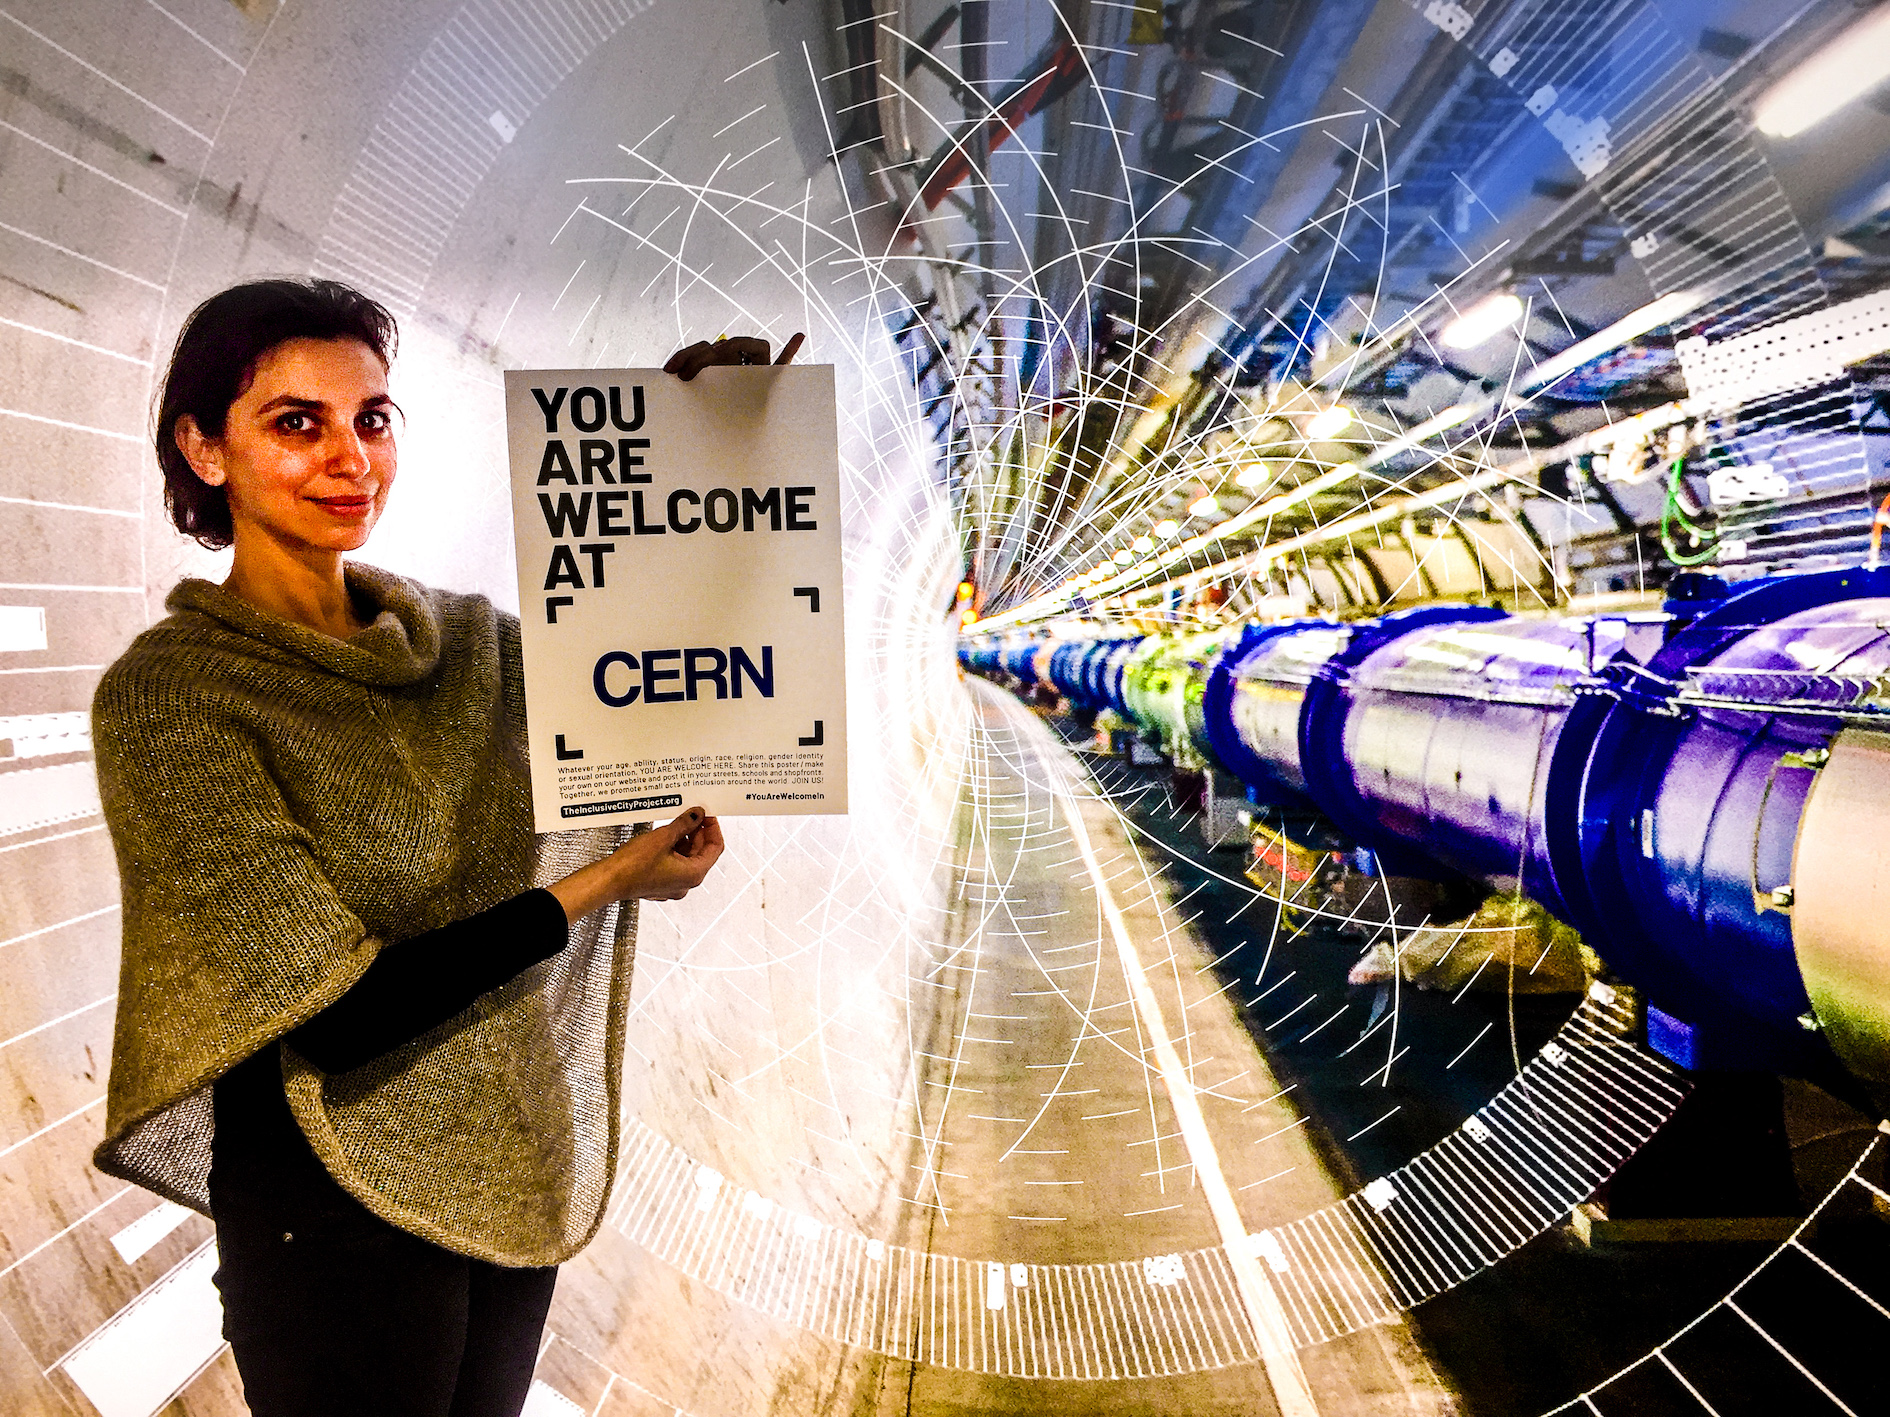 Νέο υπερ - επιταχυντή σχεδιάζουν στο CERN